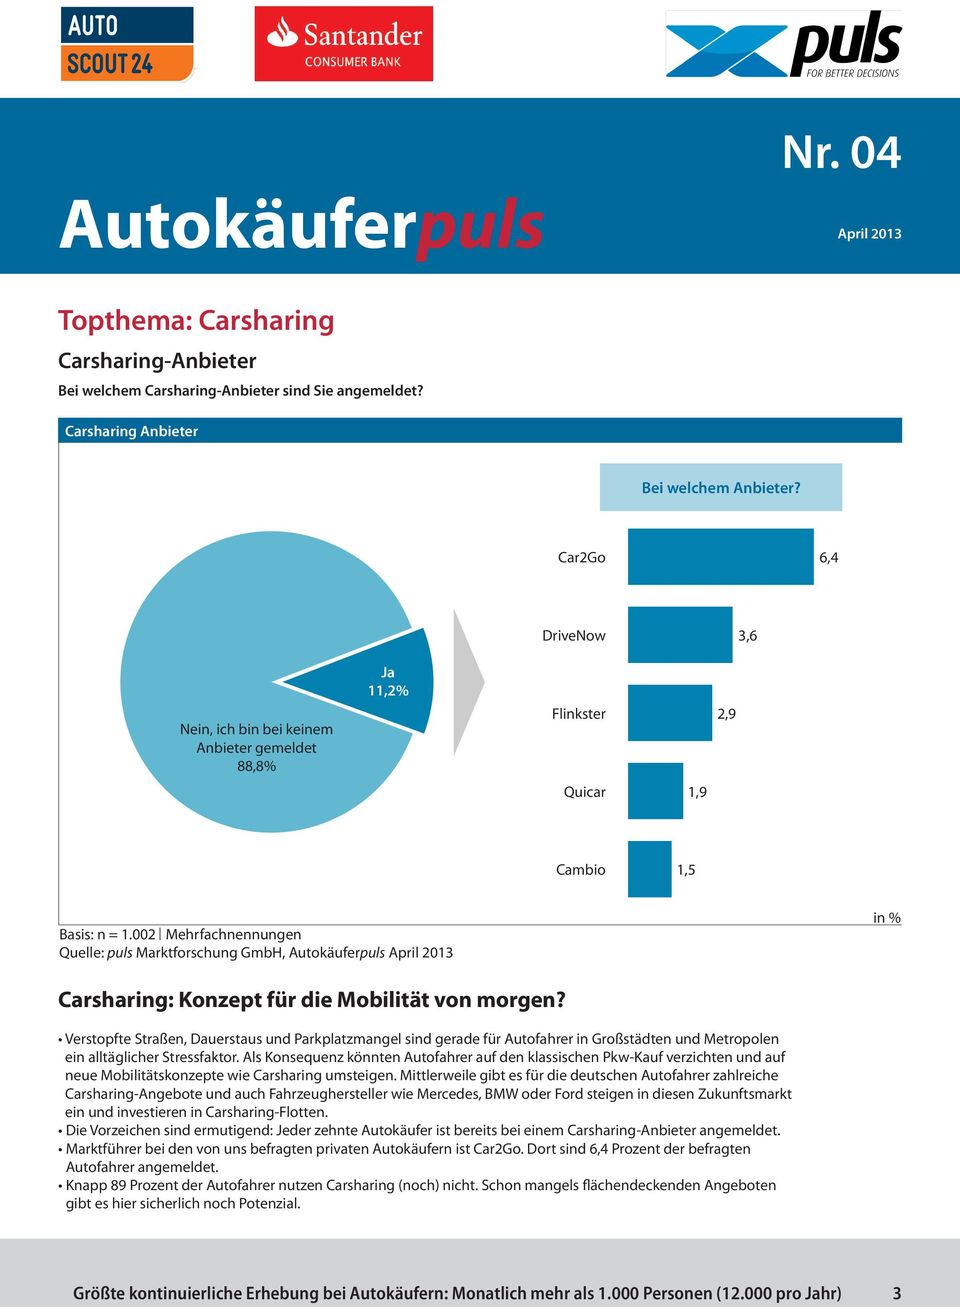 002 Mehrfachnennungen Quelle: puls Marktforschung GmbH, Carsharing: Konzept für die Mobilität von morgen?